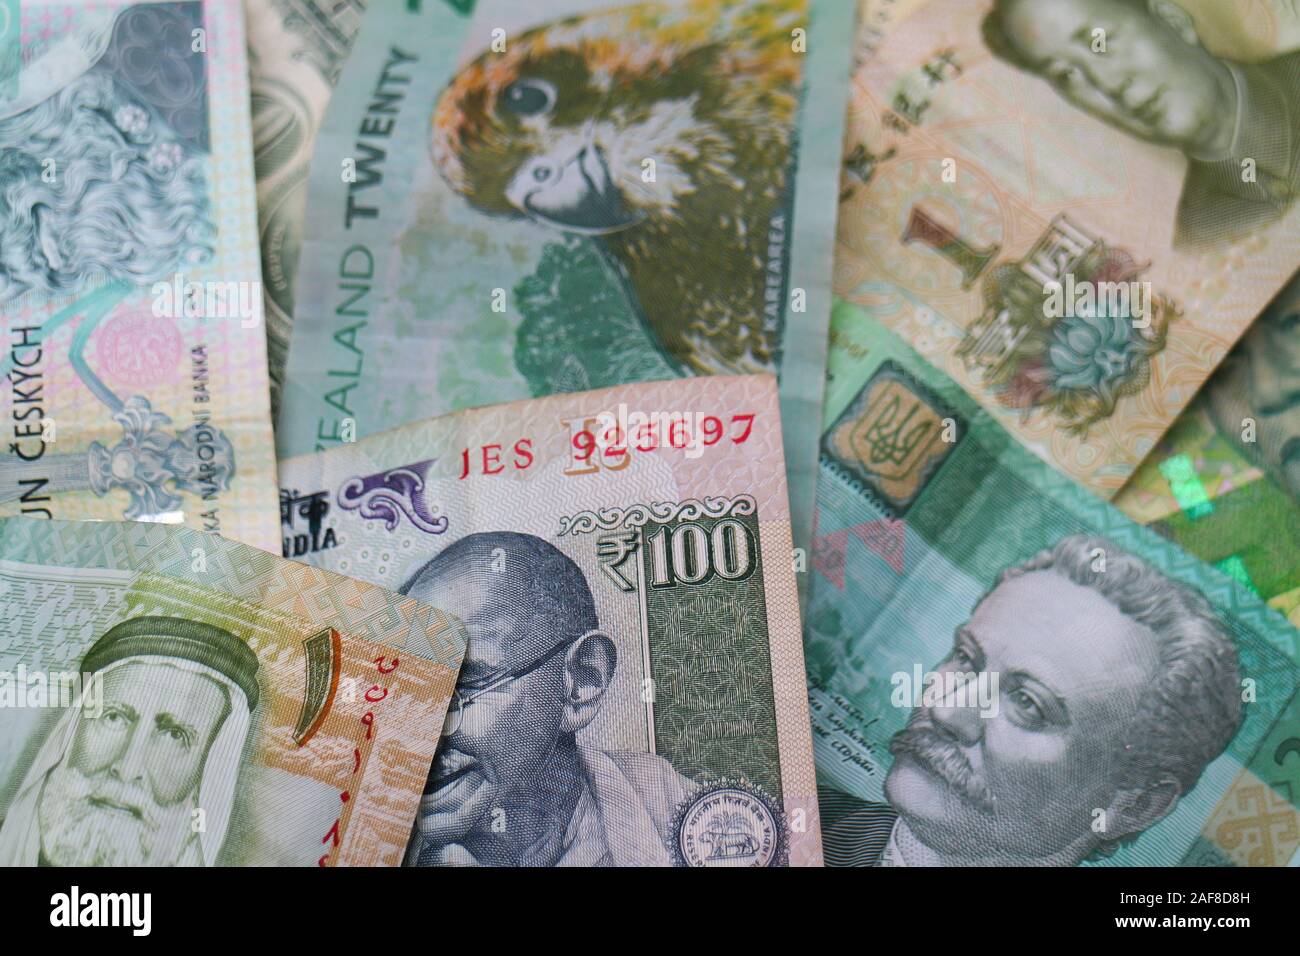 Il verde di banconote della valute del mondo: Rupie indiane, cinesi Yuan, DINARO GIORDANO, dollaro US Rand Sudafricano, Czech Koruna, ucraino grivna. Foto Stock